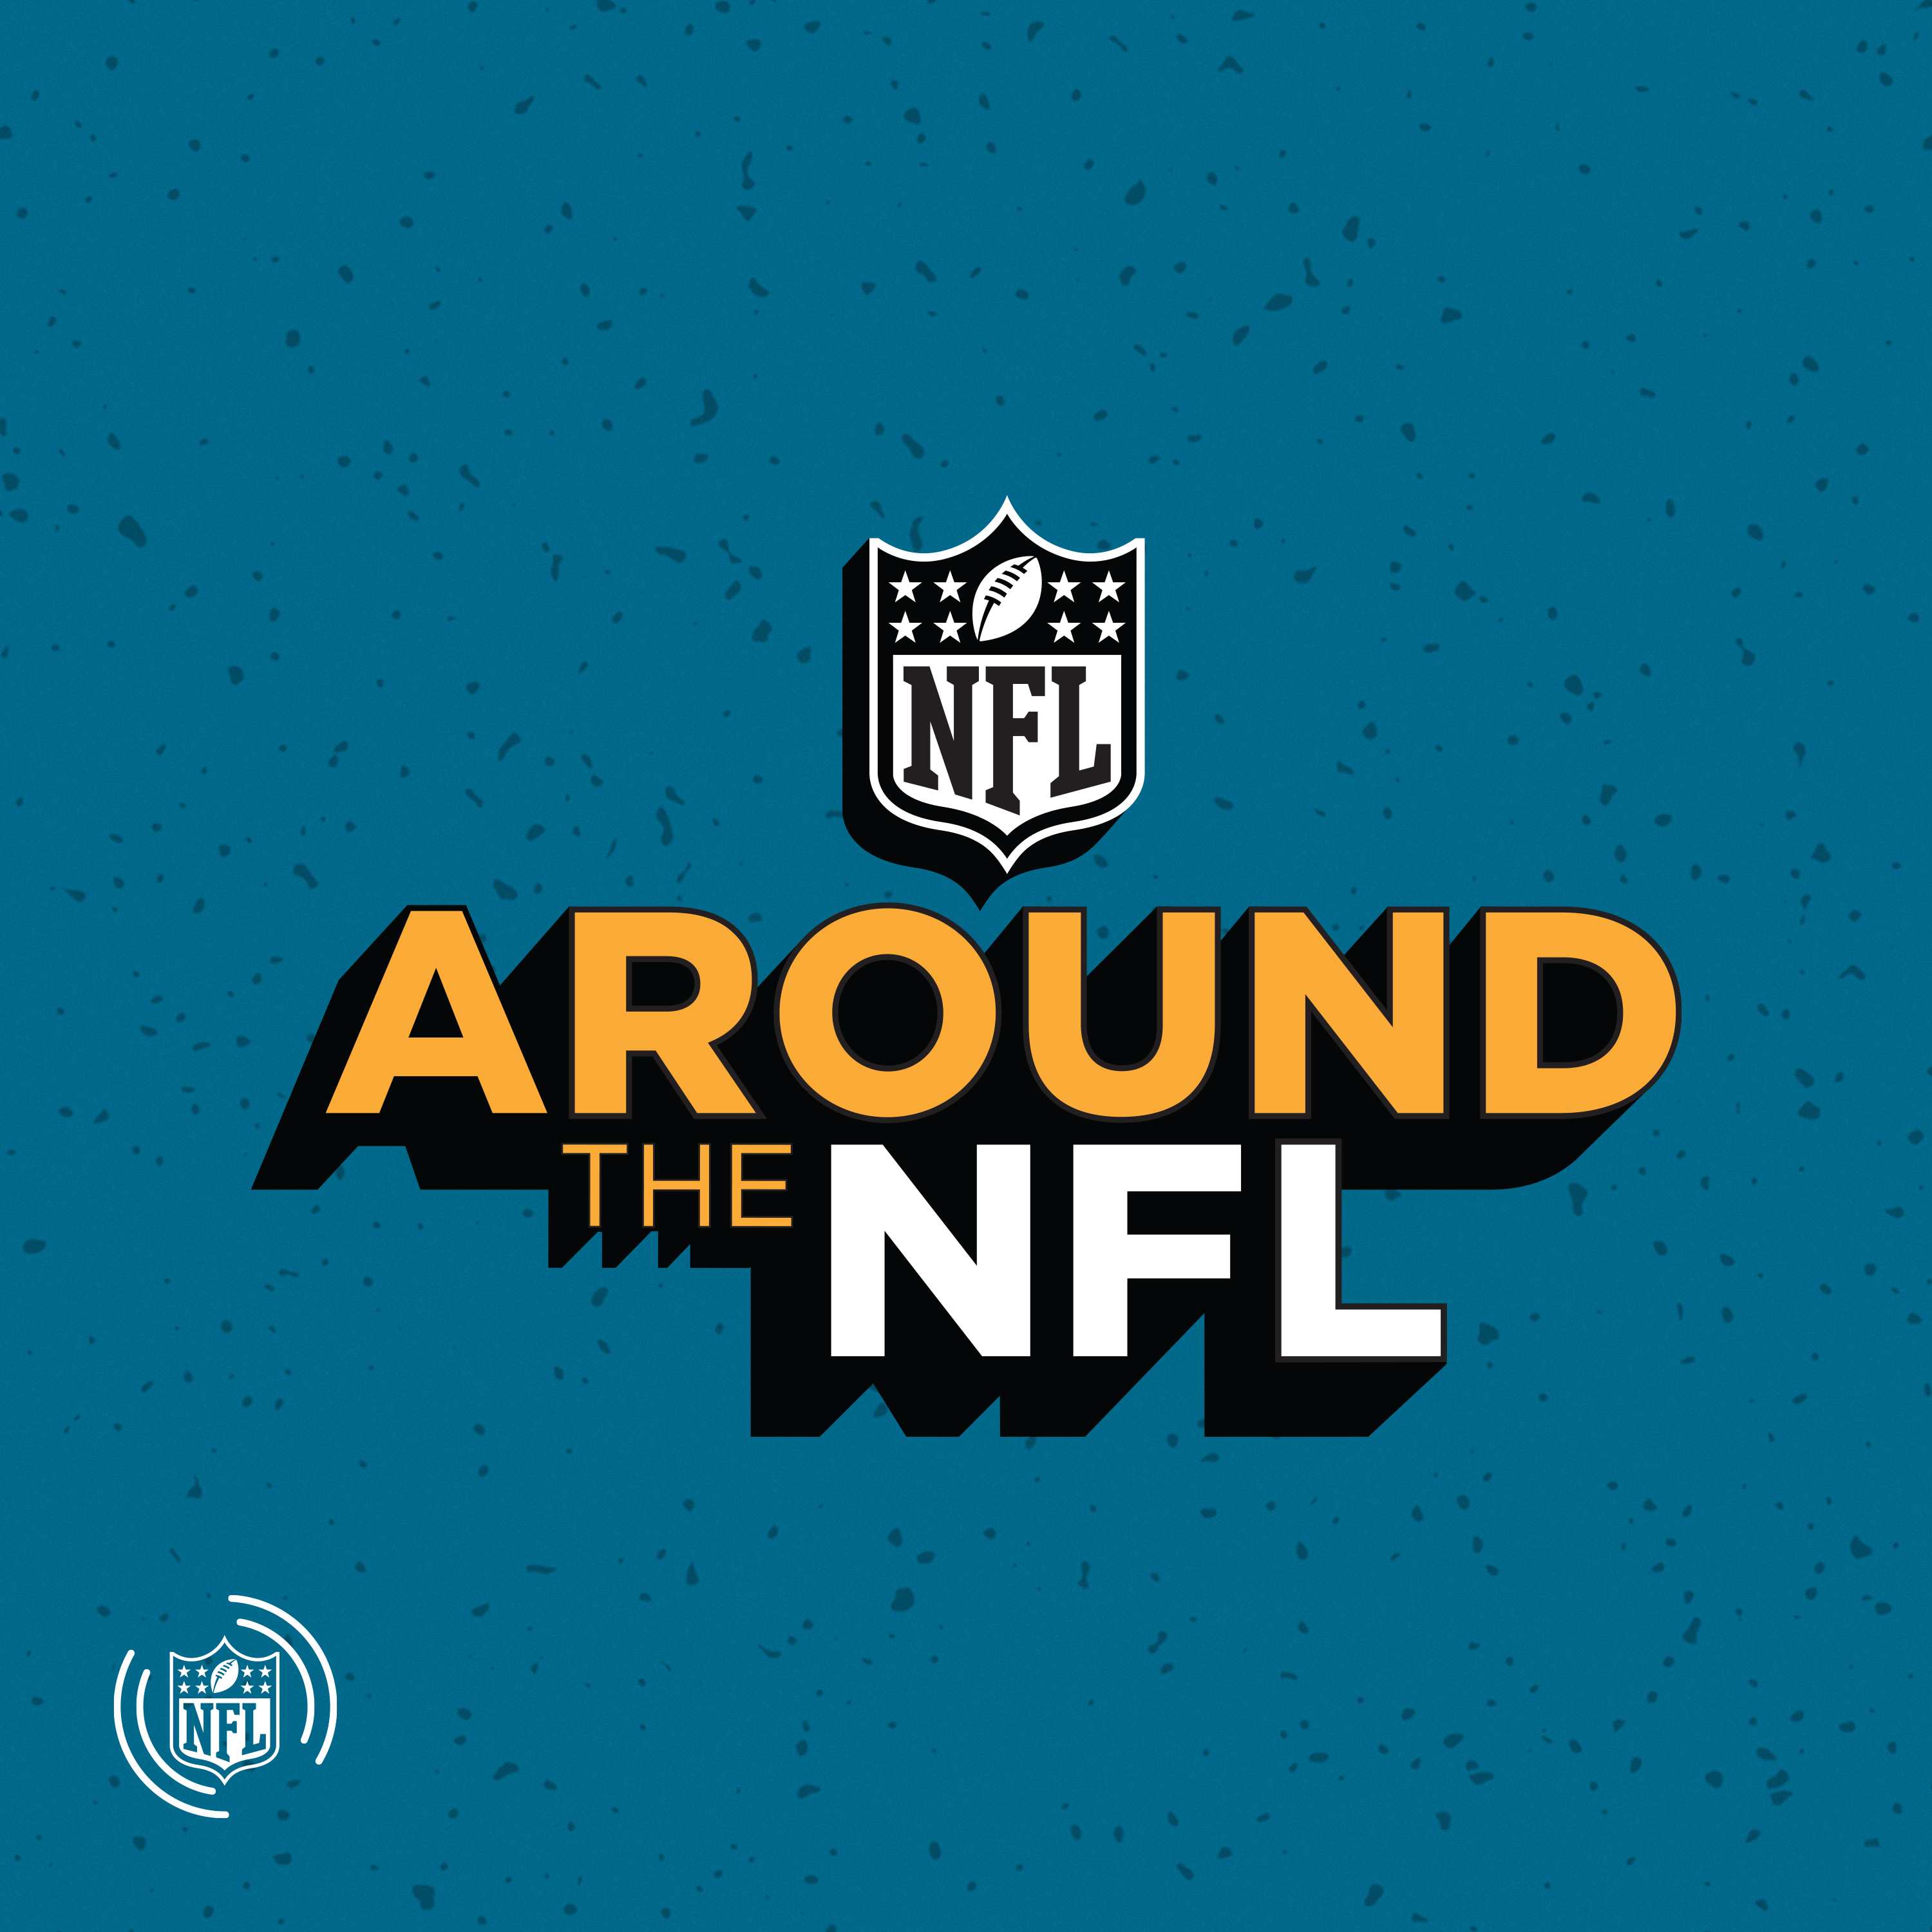 NFL ATL: Championship Sunday preview; Robert Quinn interview